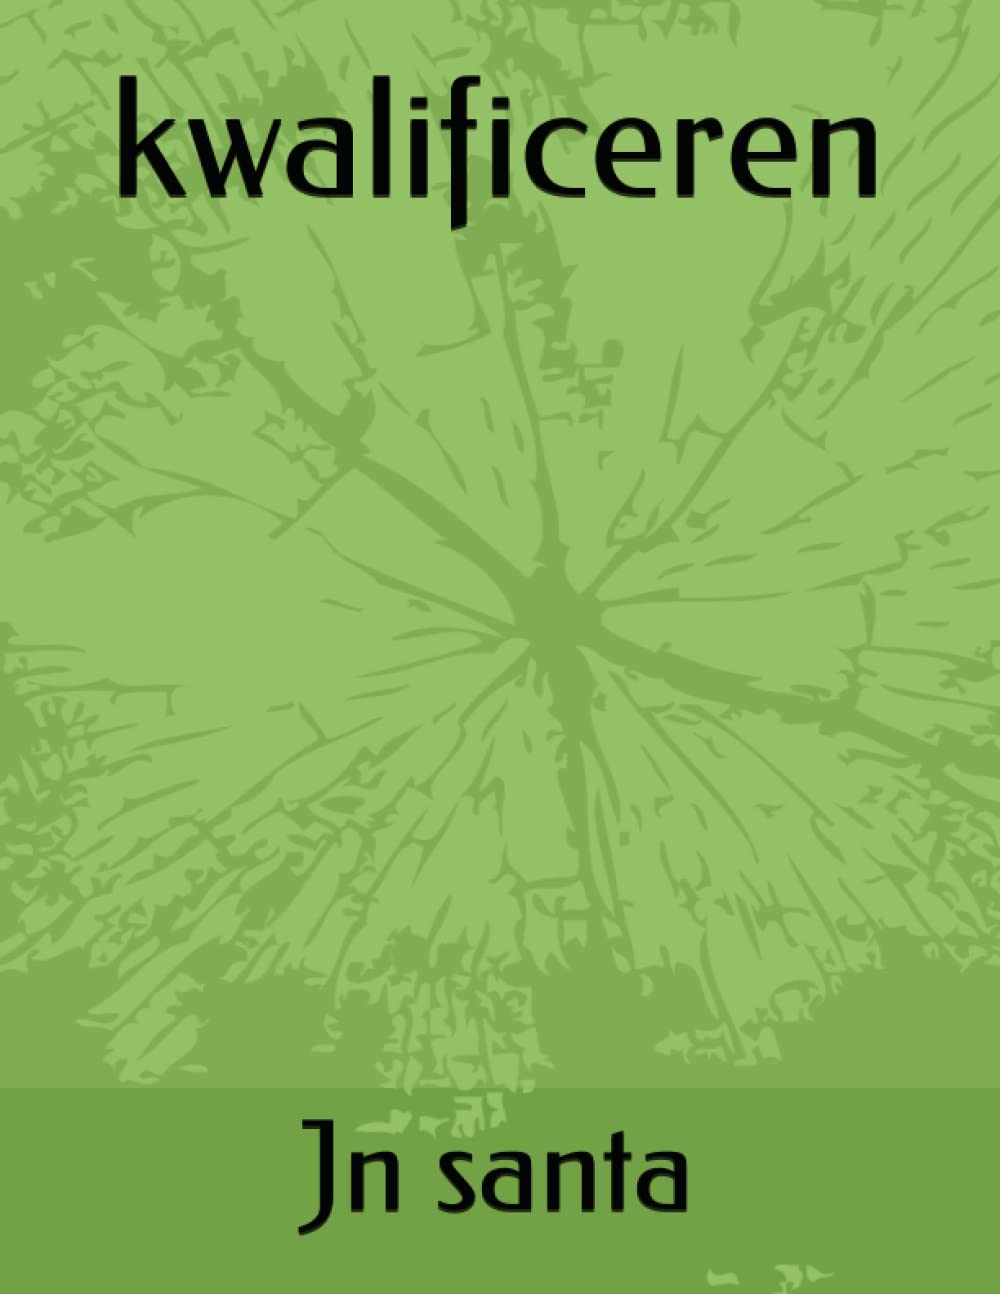 kwalificeren (Dutch Edition)